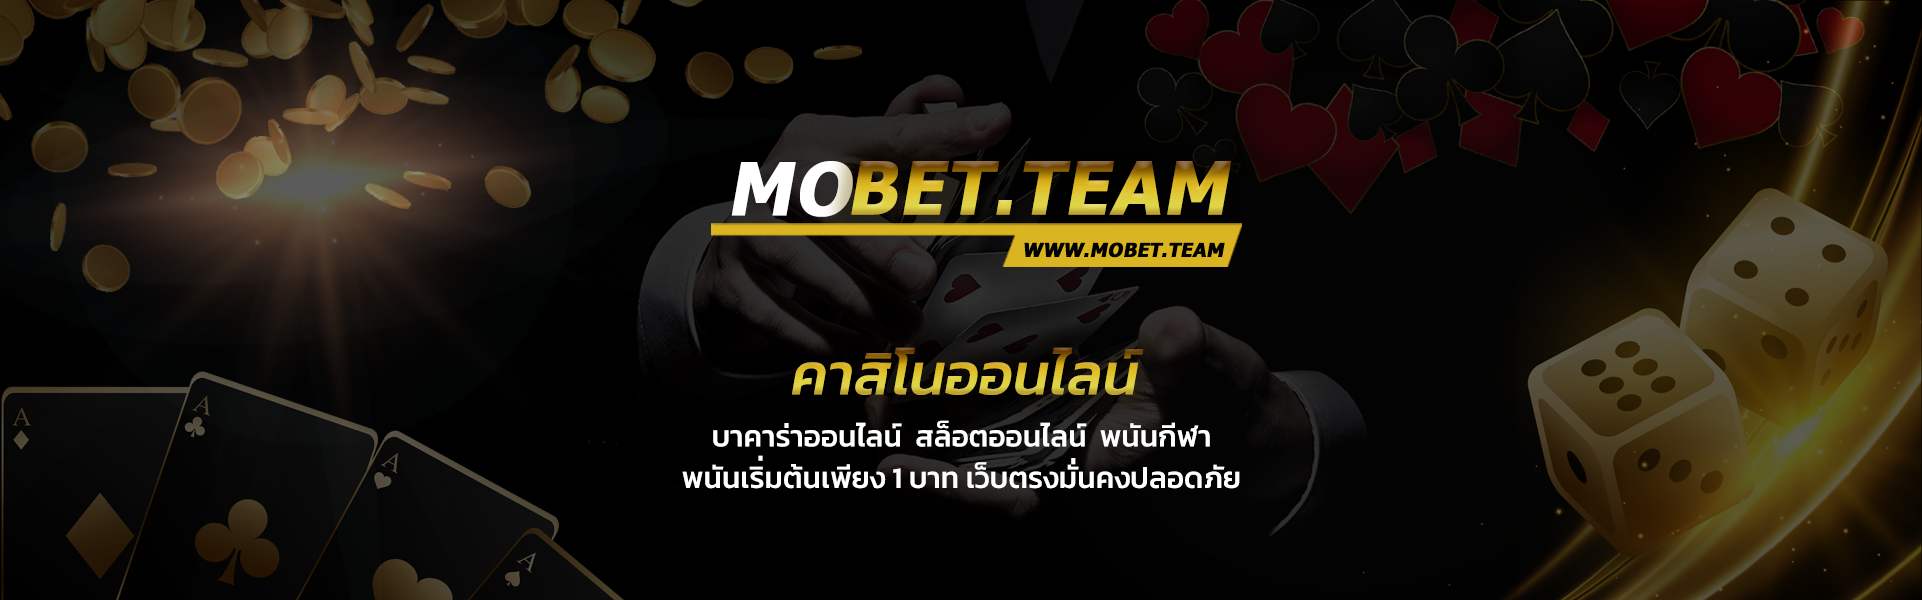 Mobet เว็บคาสิโนอันดับ1 ของไทย แทงบอล พนันบอล บาคาร่า เกม สล็อตครบวงจร